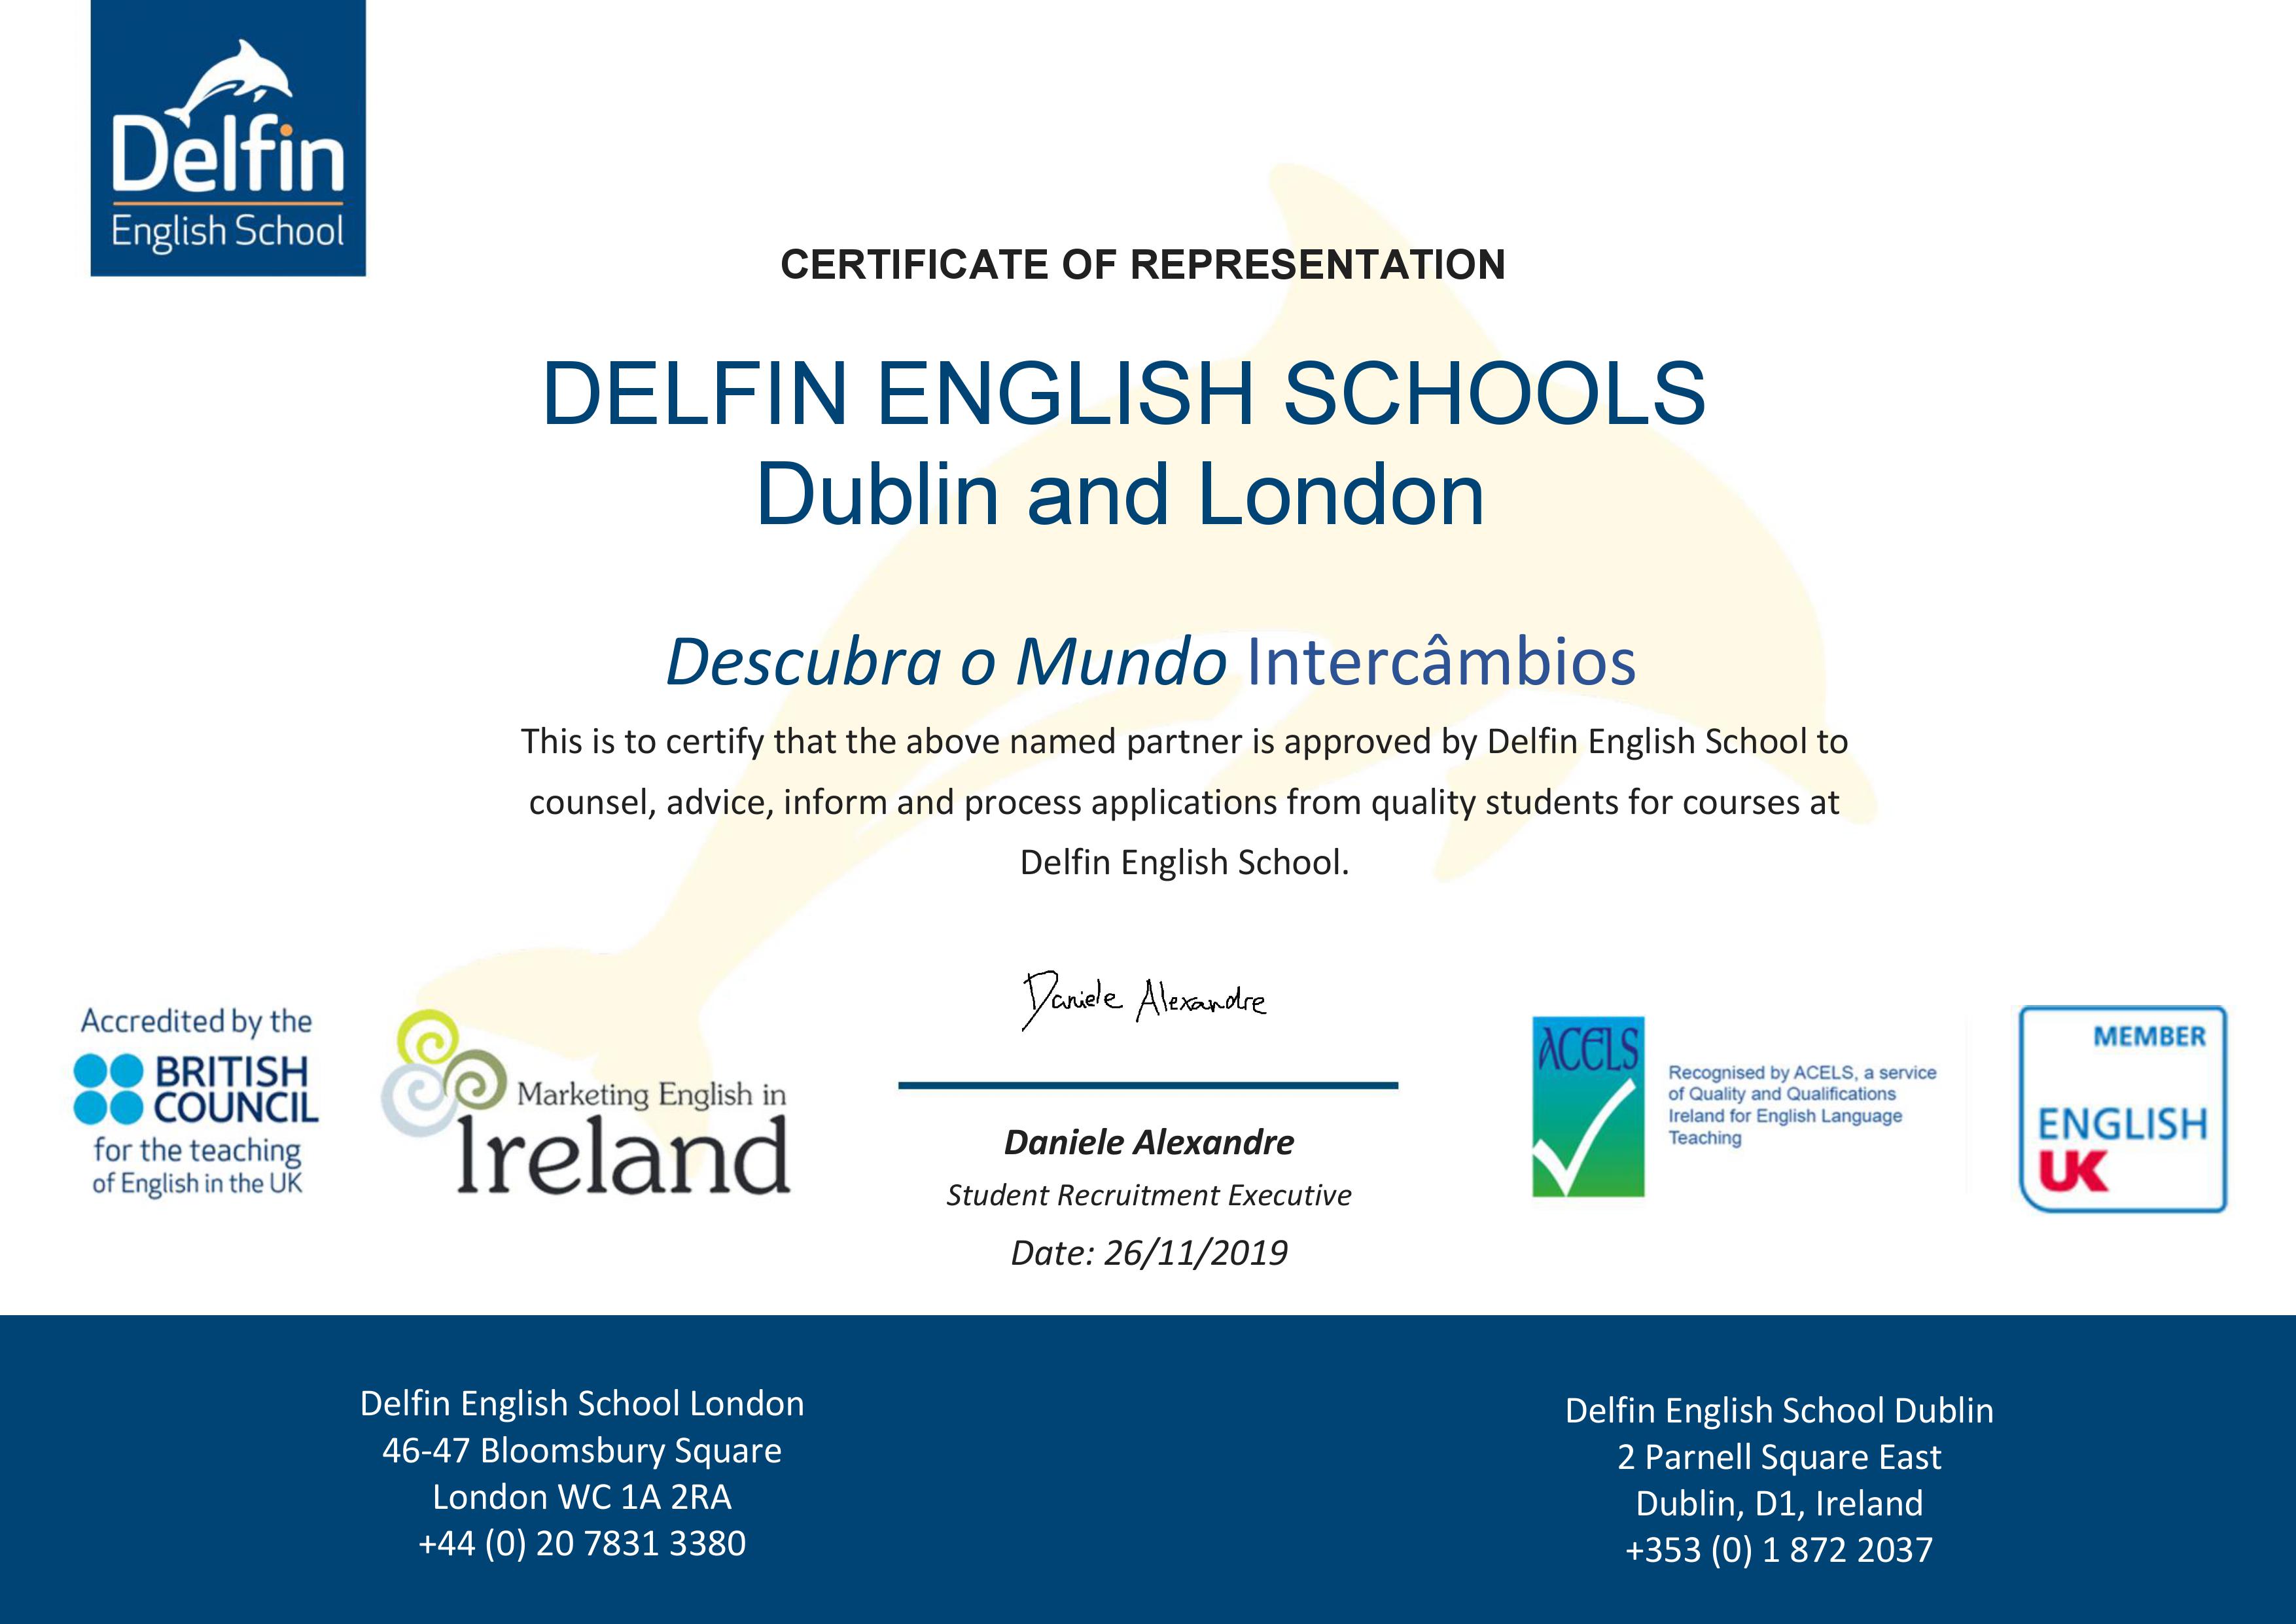 Descubra o Mundo é um agente autorizado da Delfin English School Dublin